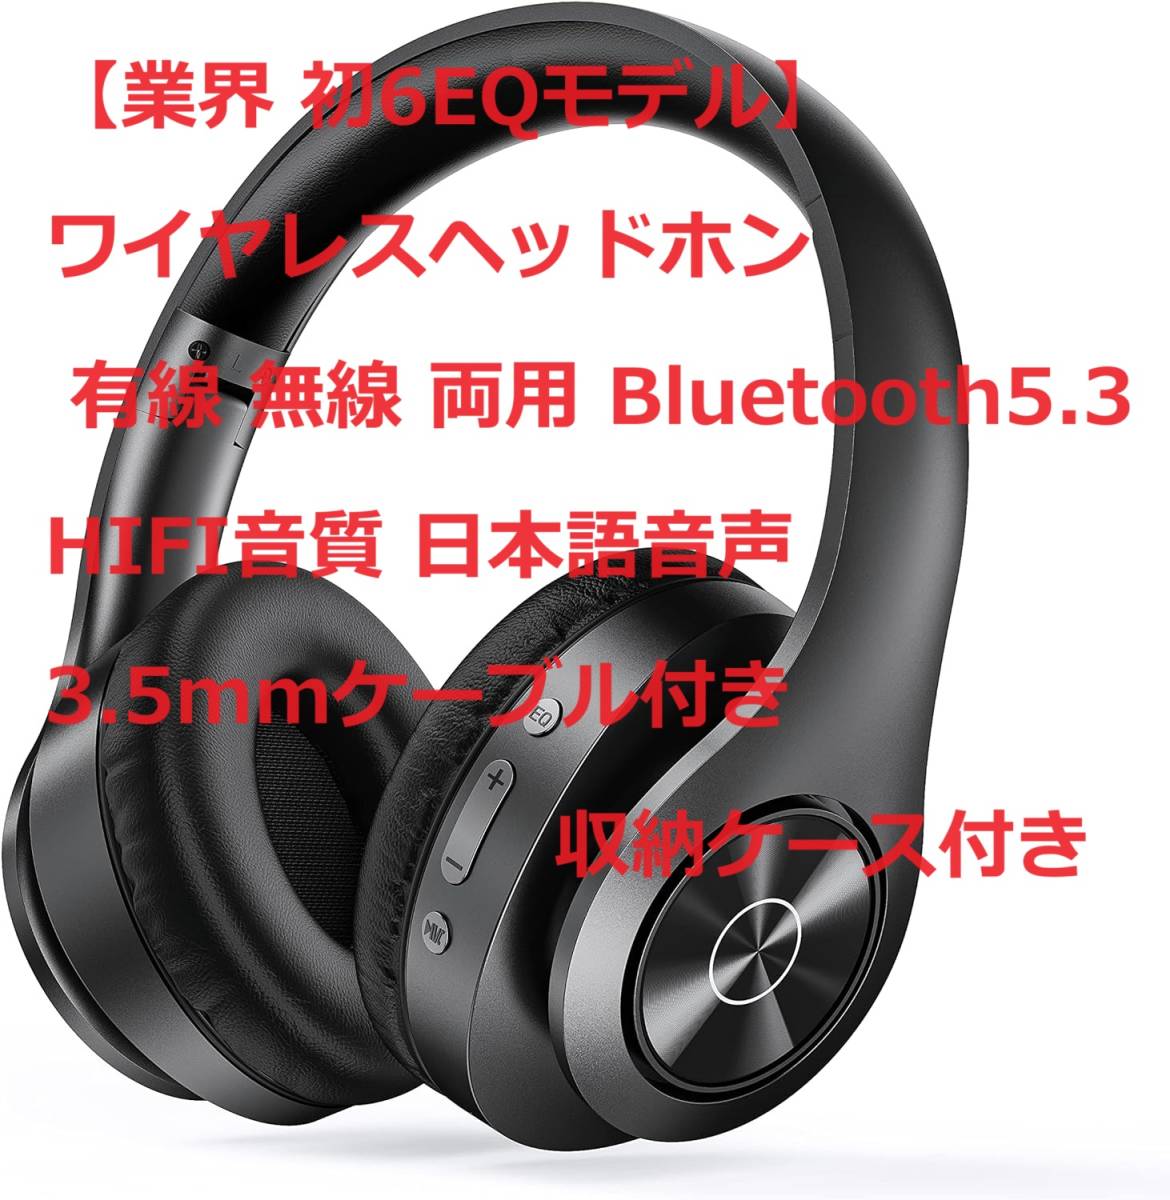 【業界 初6EQモデル】ワイヤレスbluetoothヘッドホン 有線 無線 両用 Bluetooth5.3 HIFI音質 日本語音声 3.5mmケーブル付き収納ケース付き